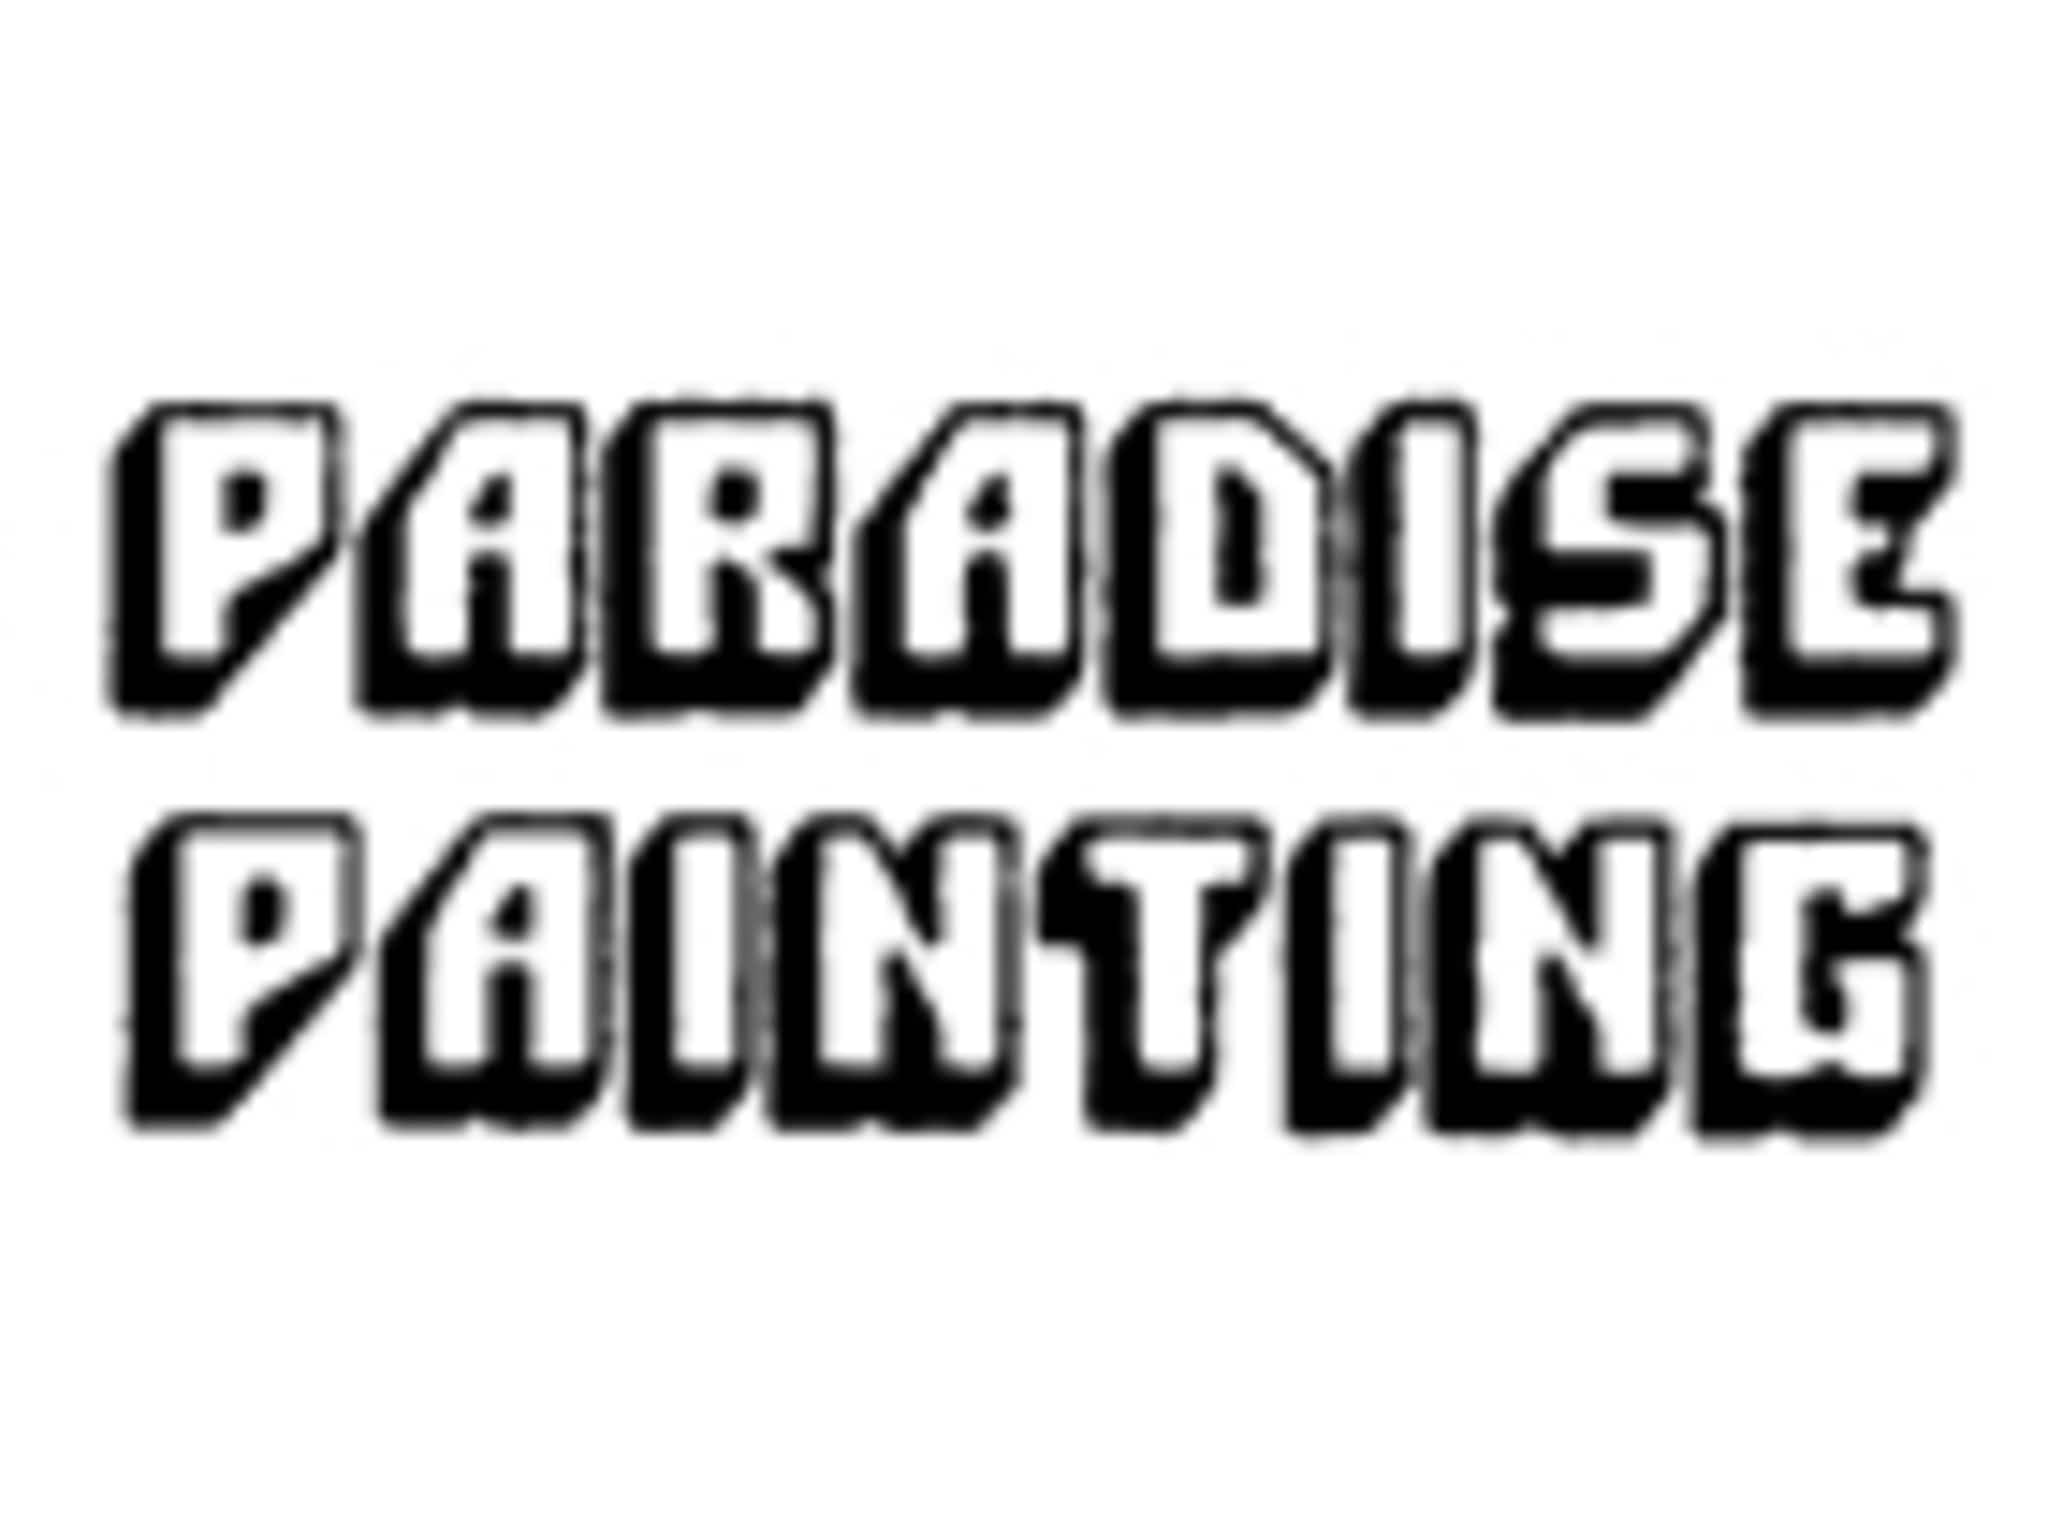 photo Paradise Painting